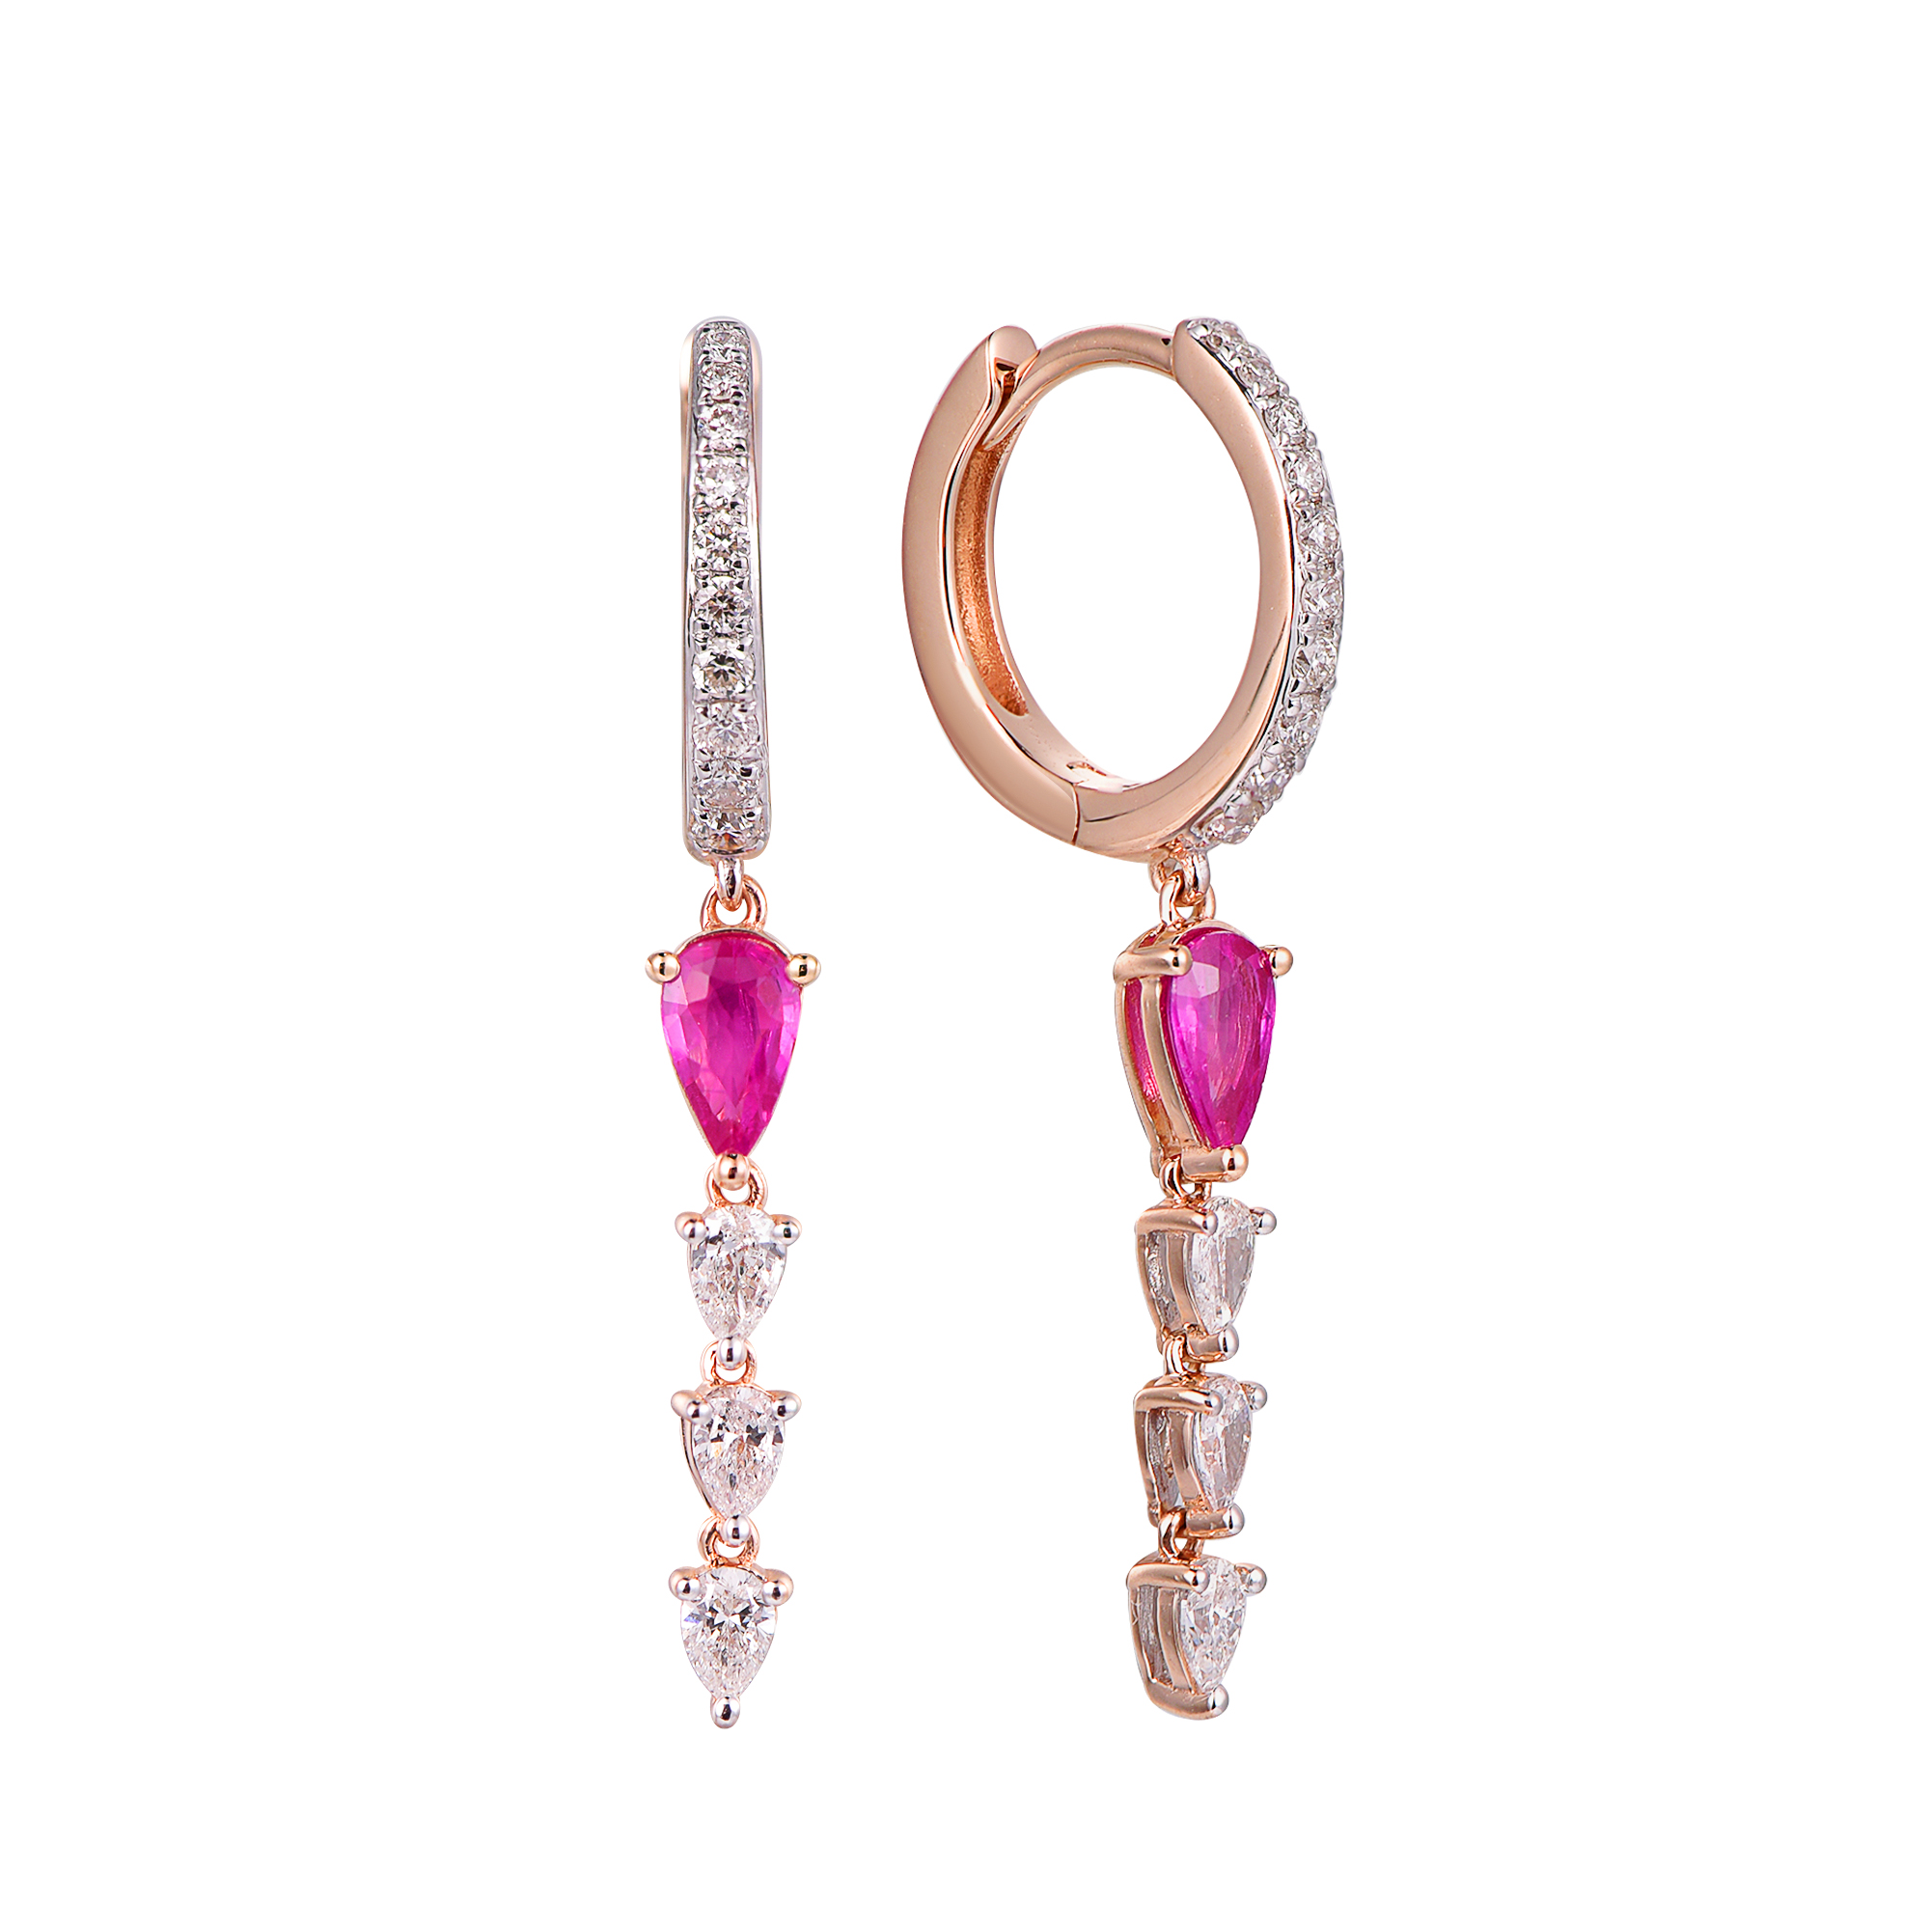 DI45463E 18K yellow gold pink sapphire earrings